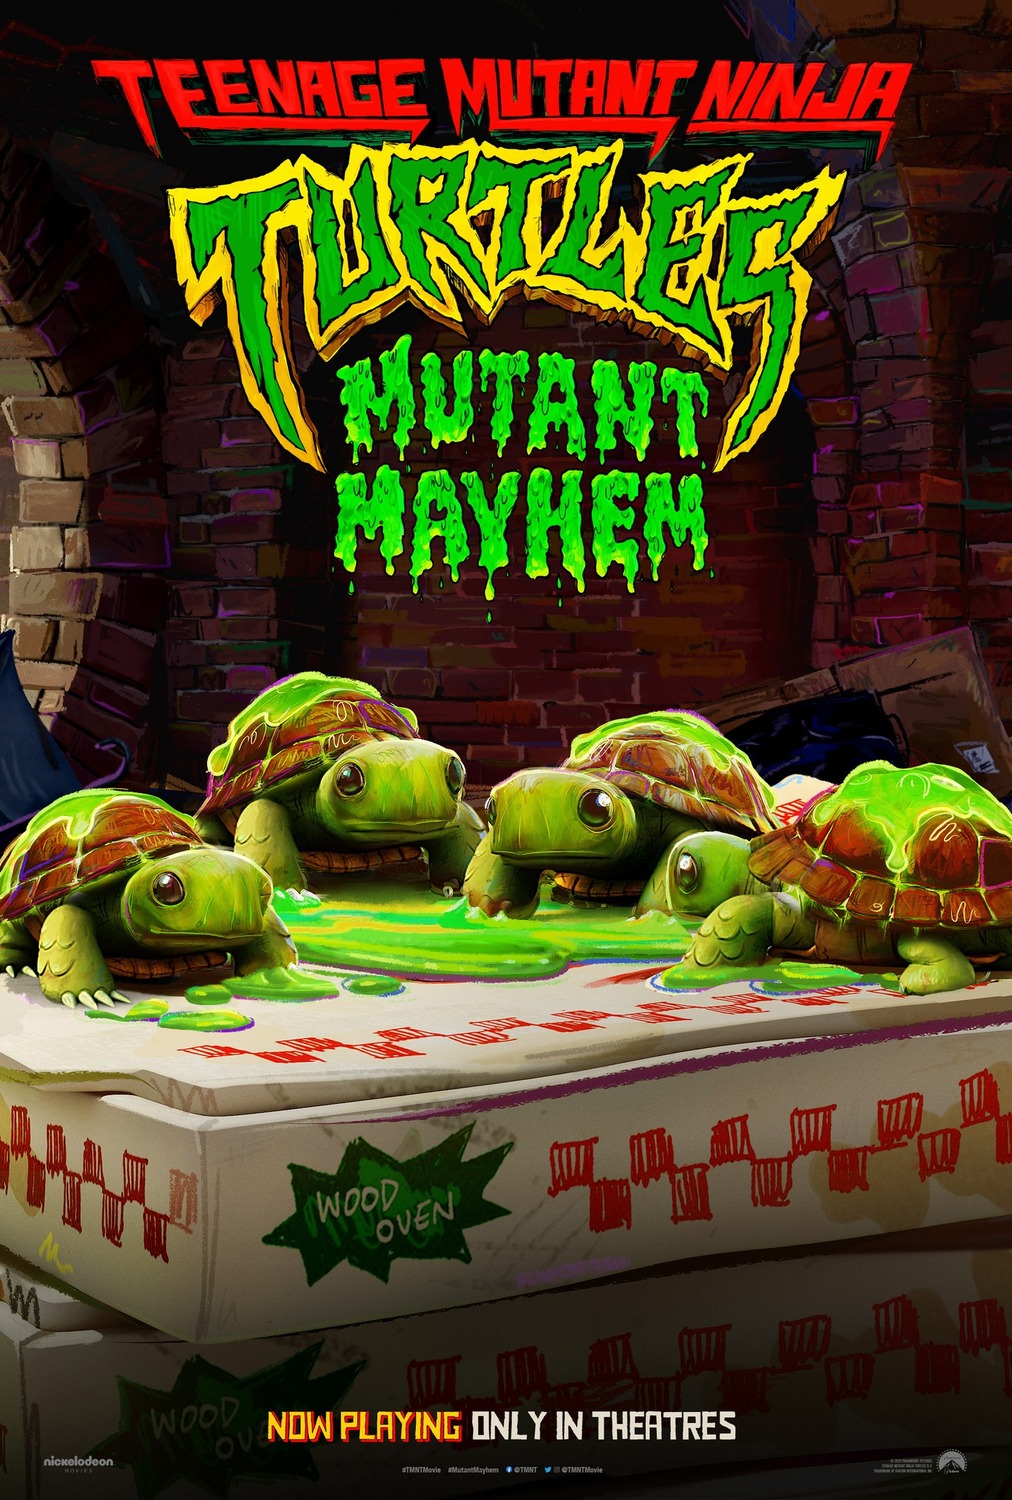 Extra Large Movie Poster Image for Teenage Mutant Ninja Turtles: Mutant Mayhem (#47 of 48)